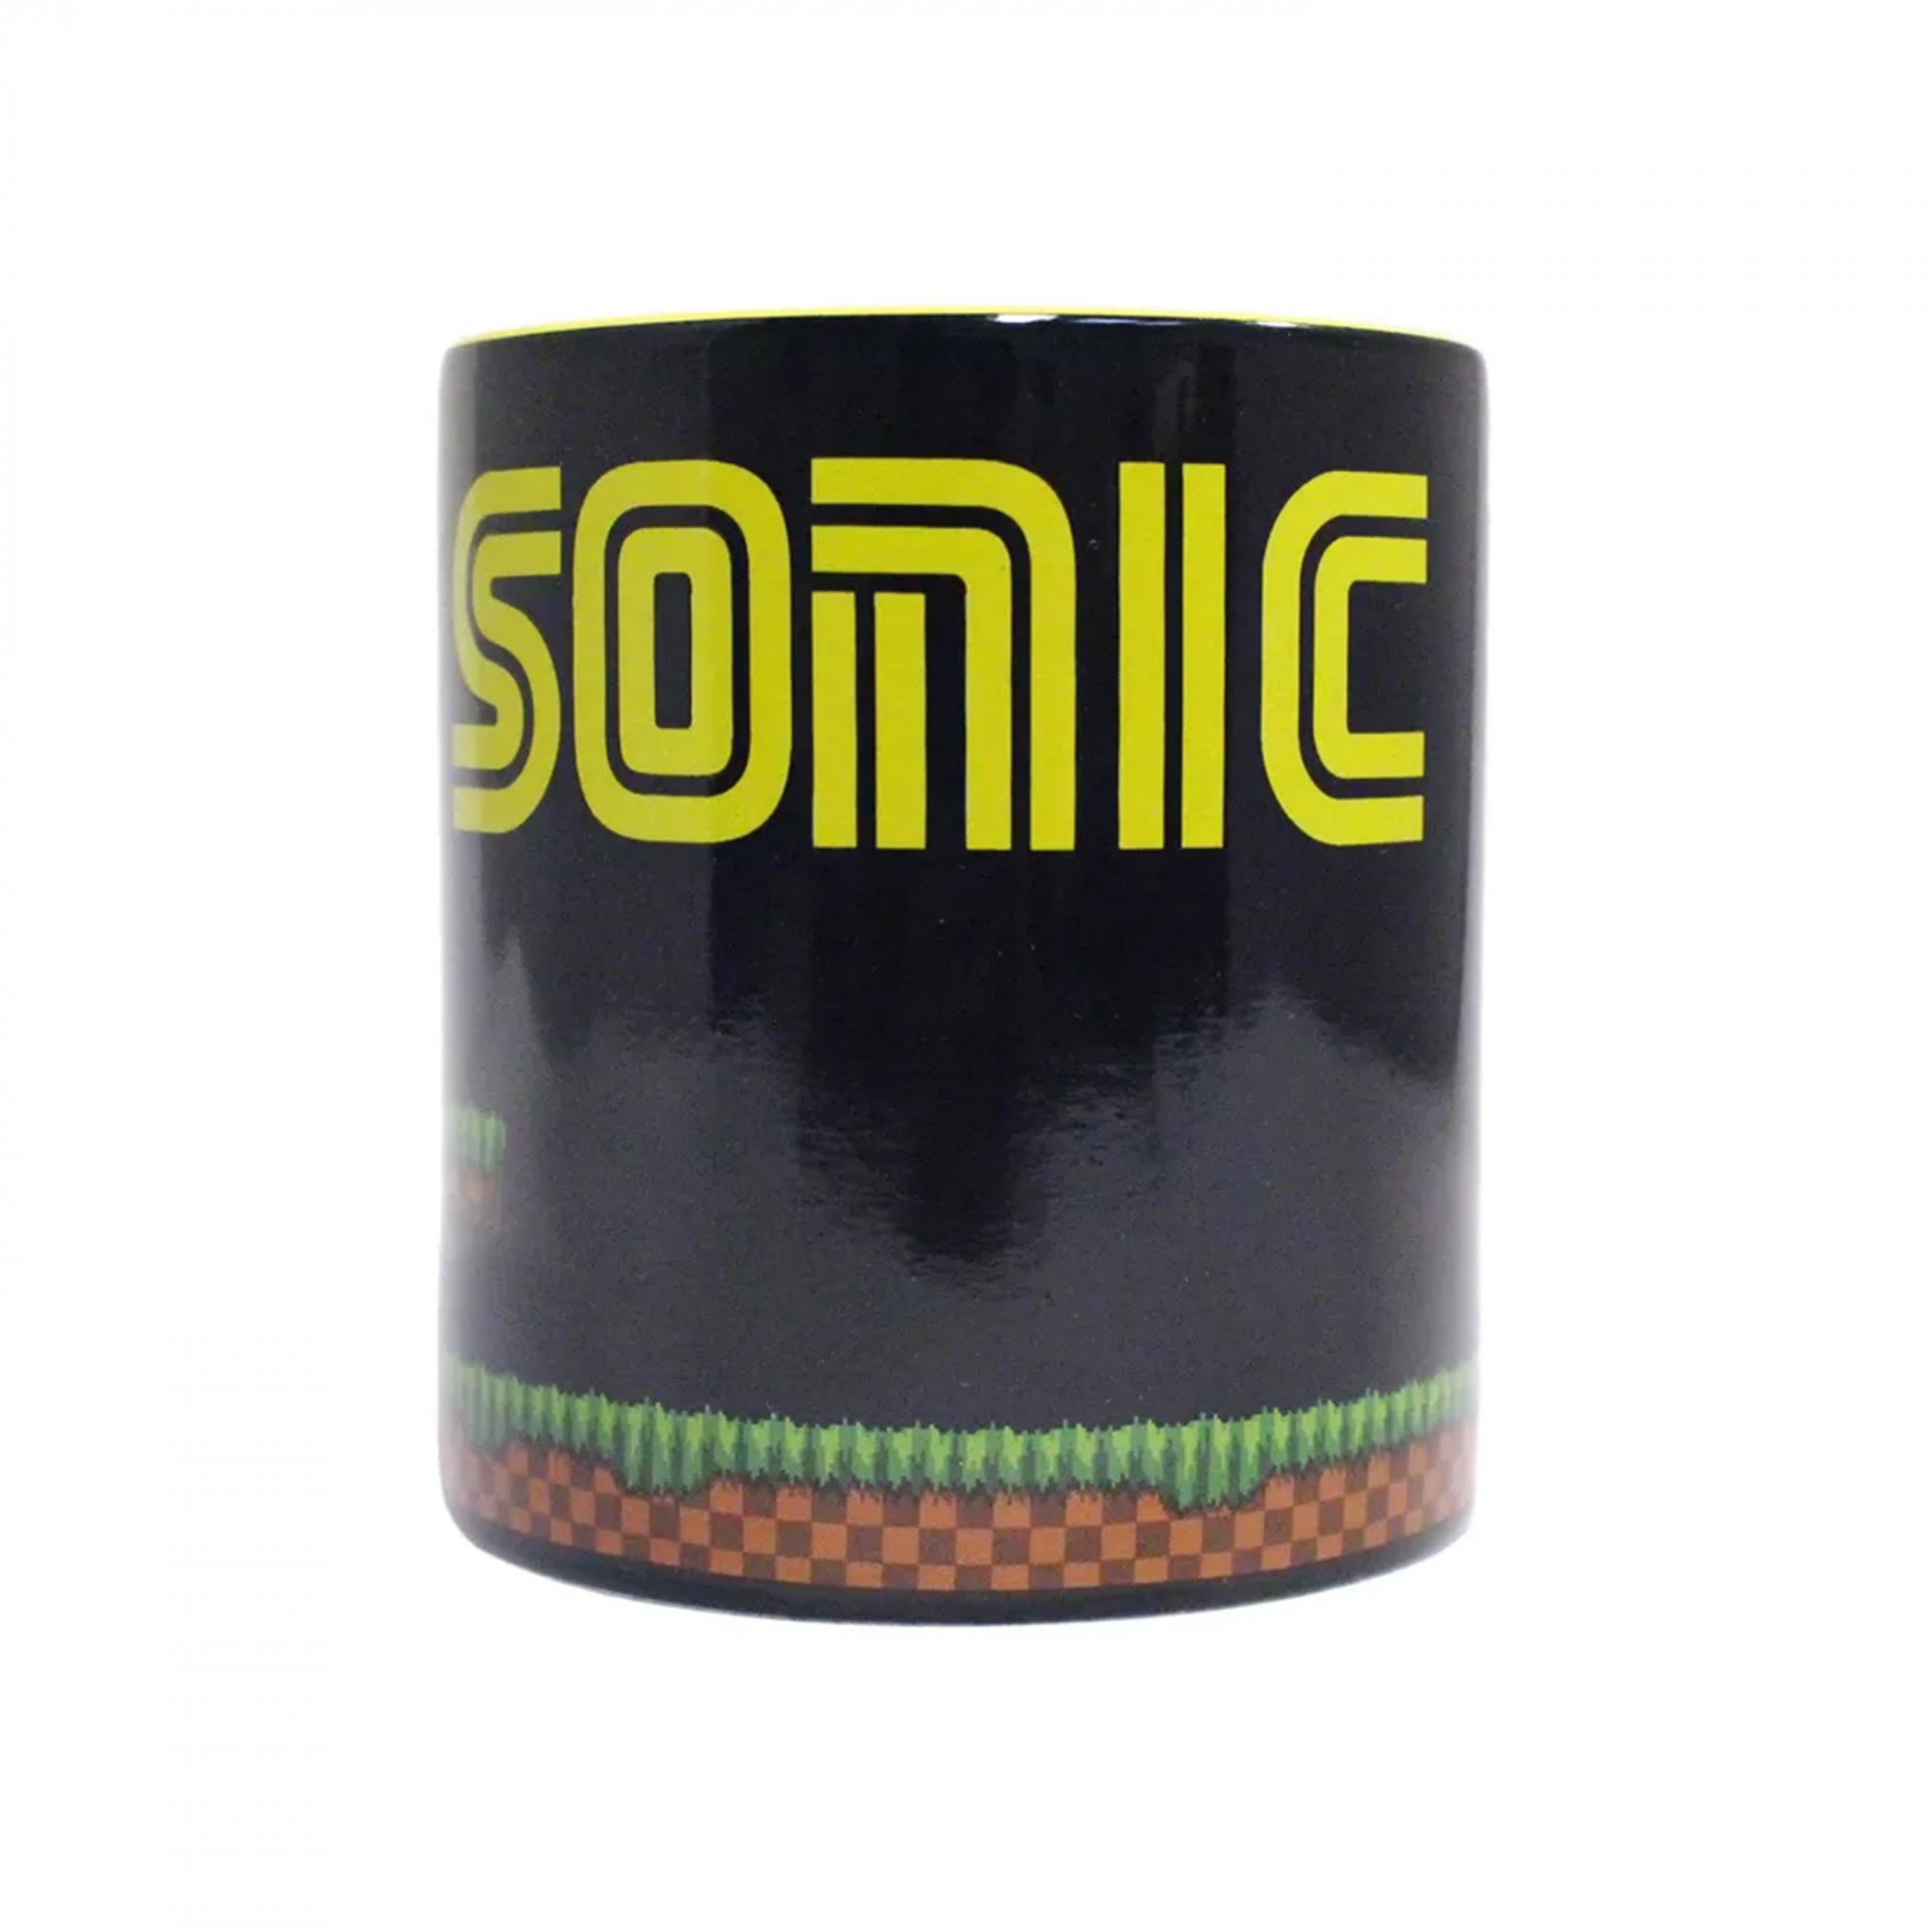 Sonic the Hedgehog Heat-Reveal 20 oz. Ceramic Mug